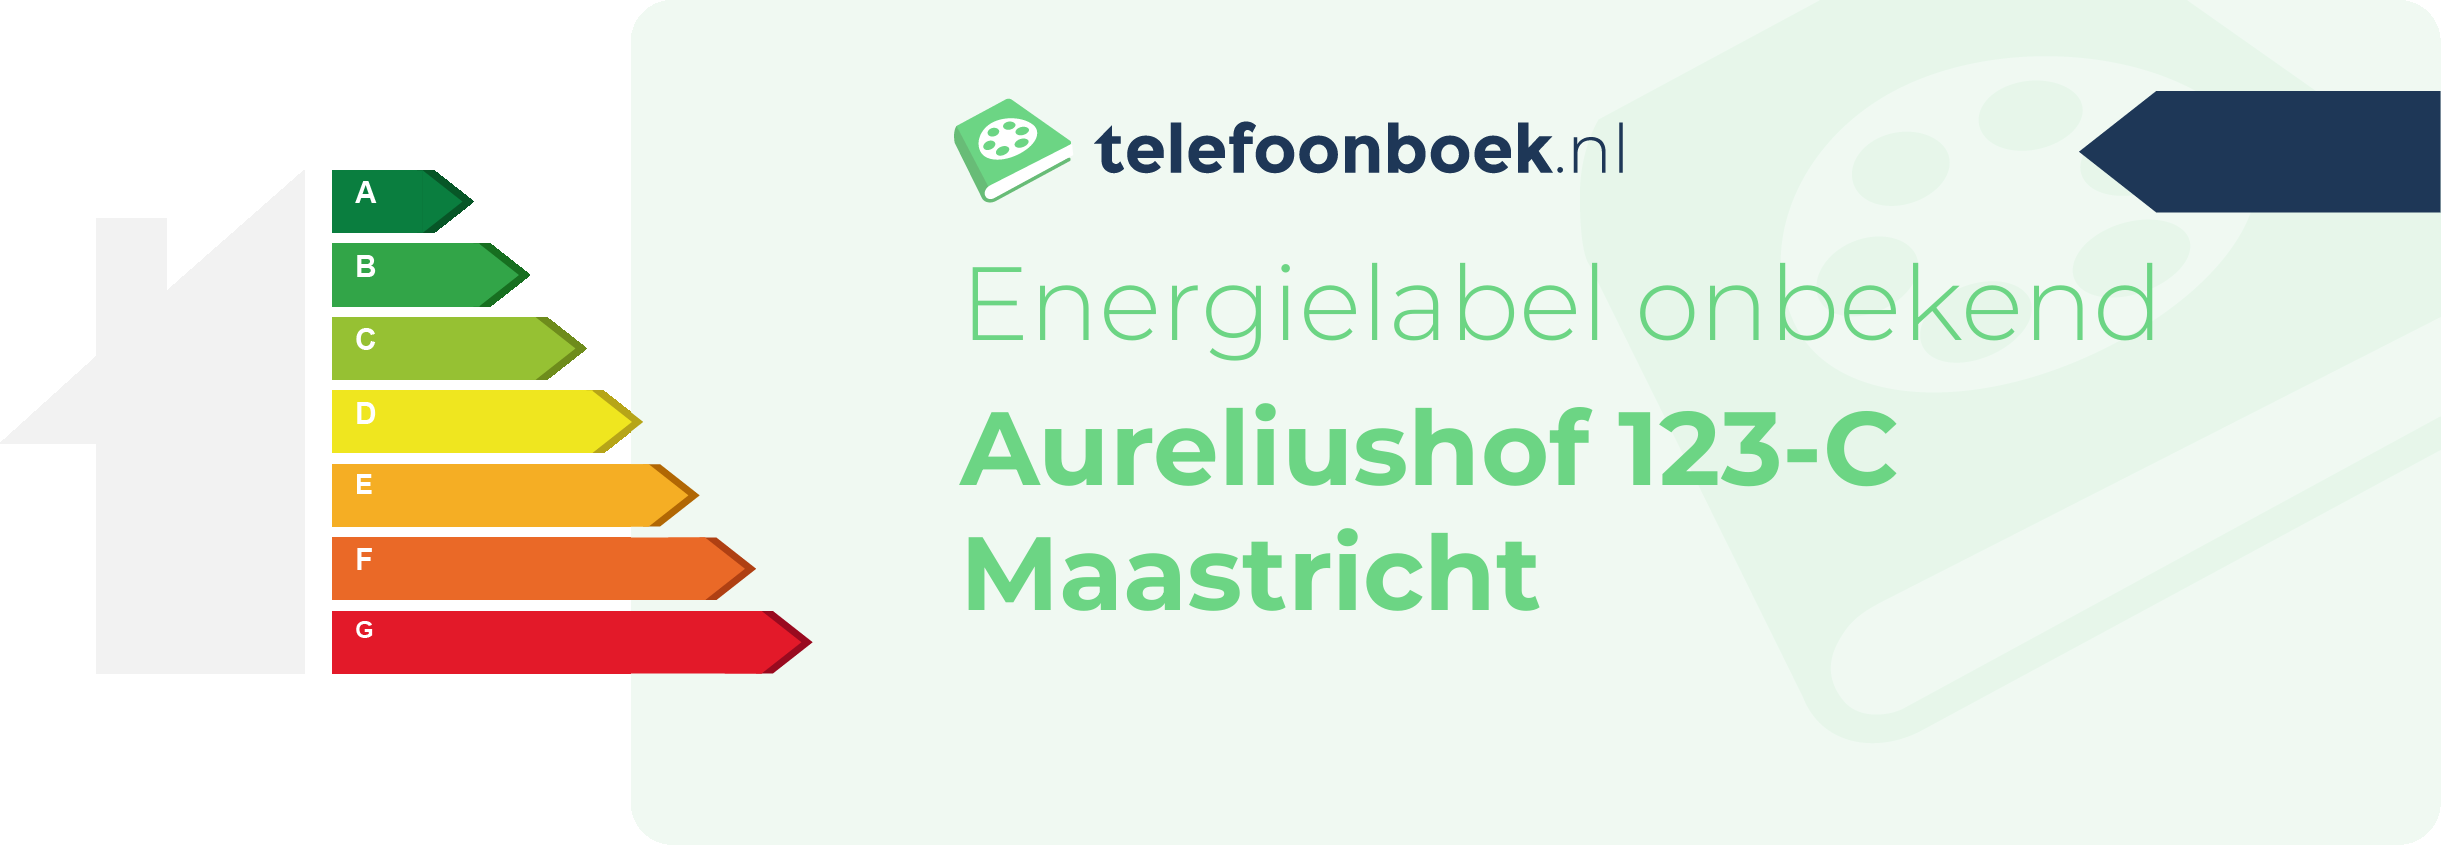 Energielabel Aureliushof 123-C Maastricht